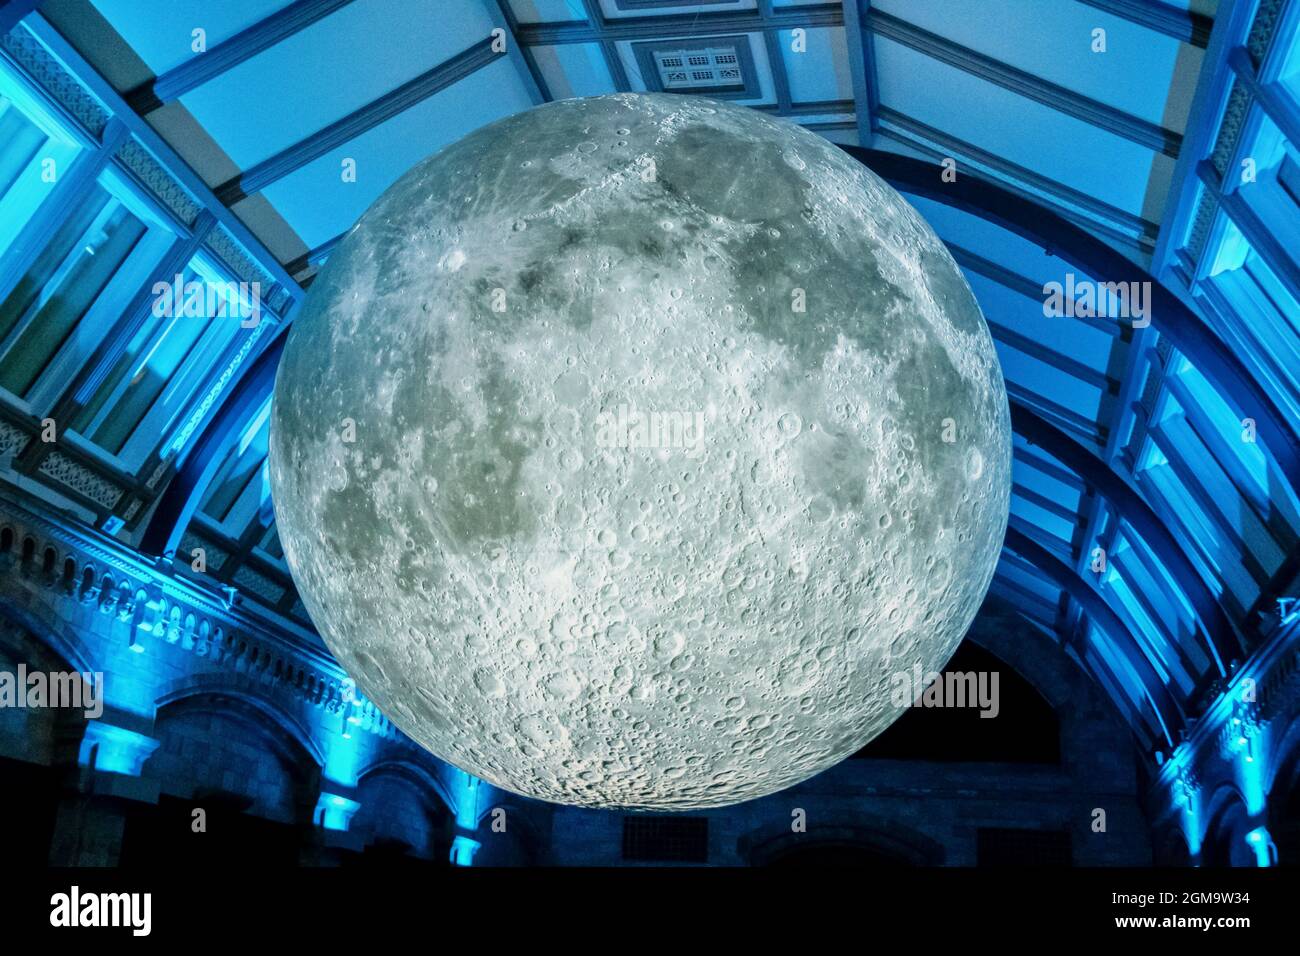 7-26-2019 London UK -3-D-Modell des Mondes im frei zugänglichen Natural Science Museum - an der Decke hängend mit dramatischer Beleuchtung Stockfoto